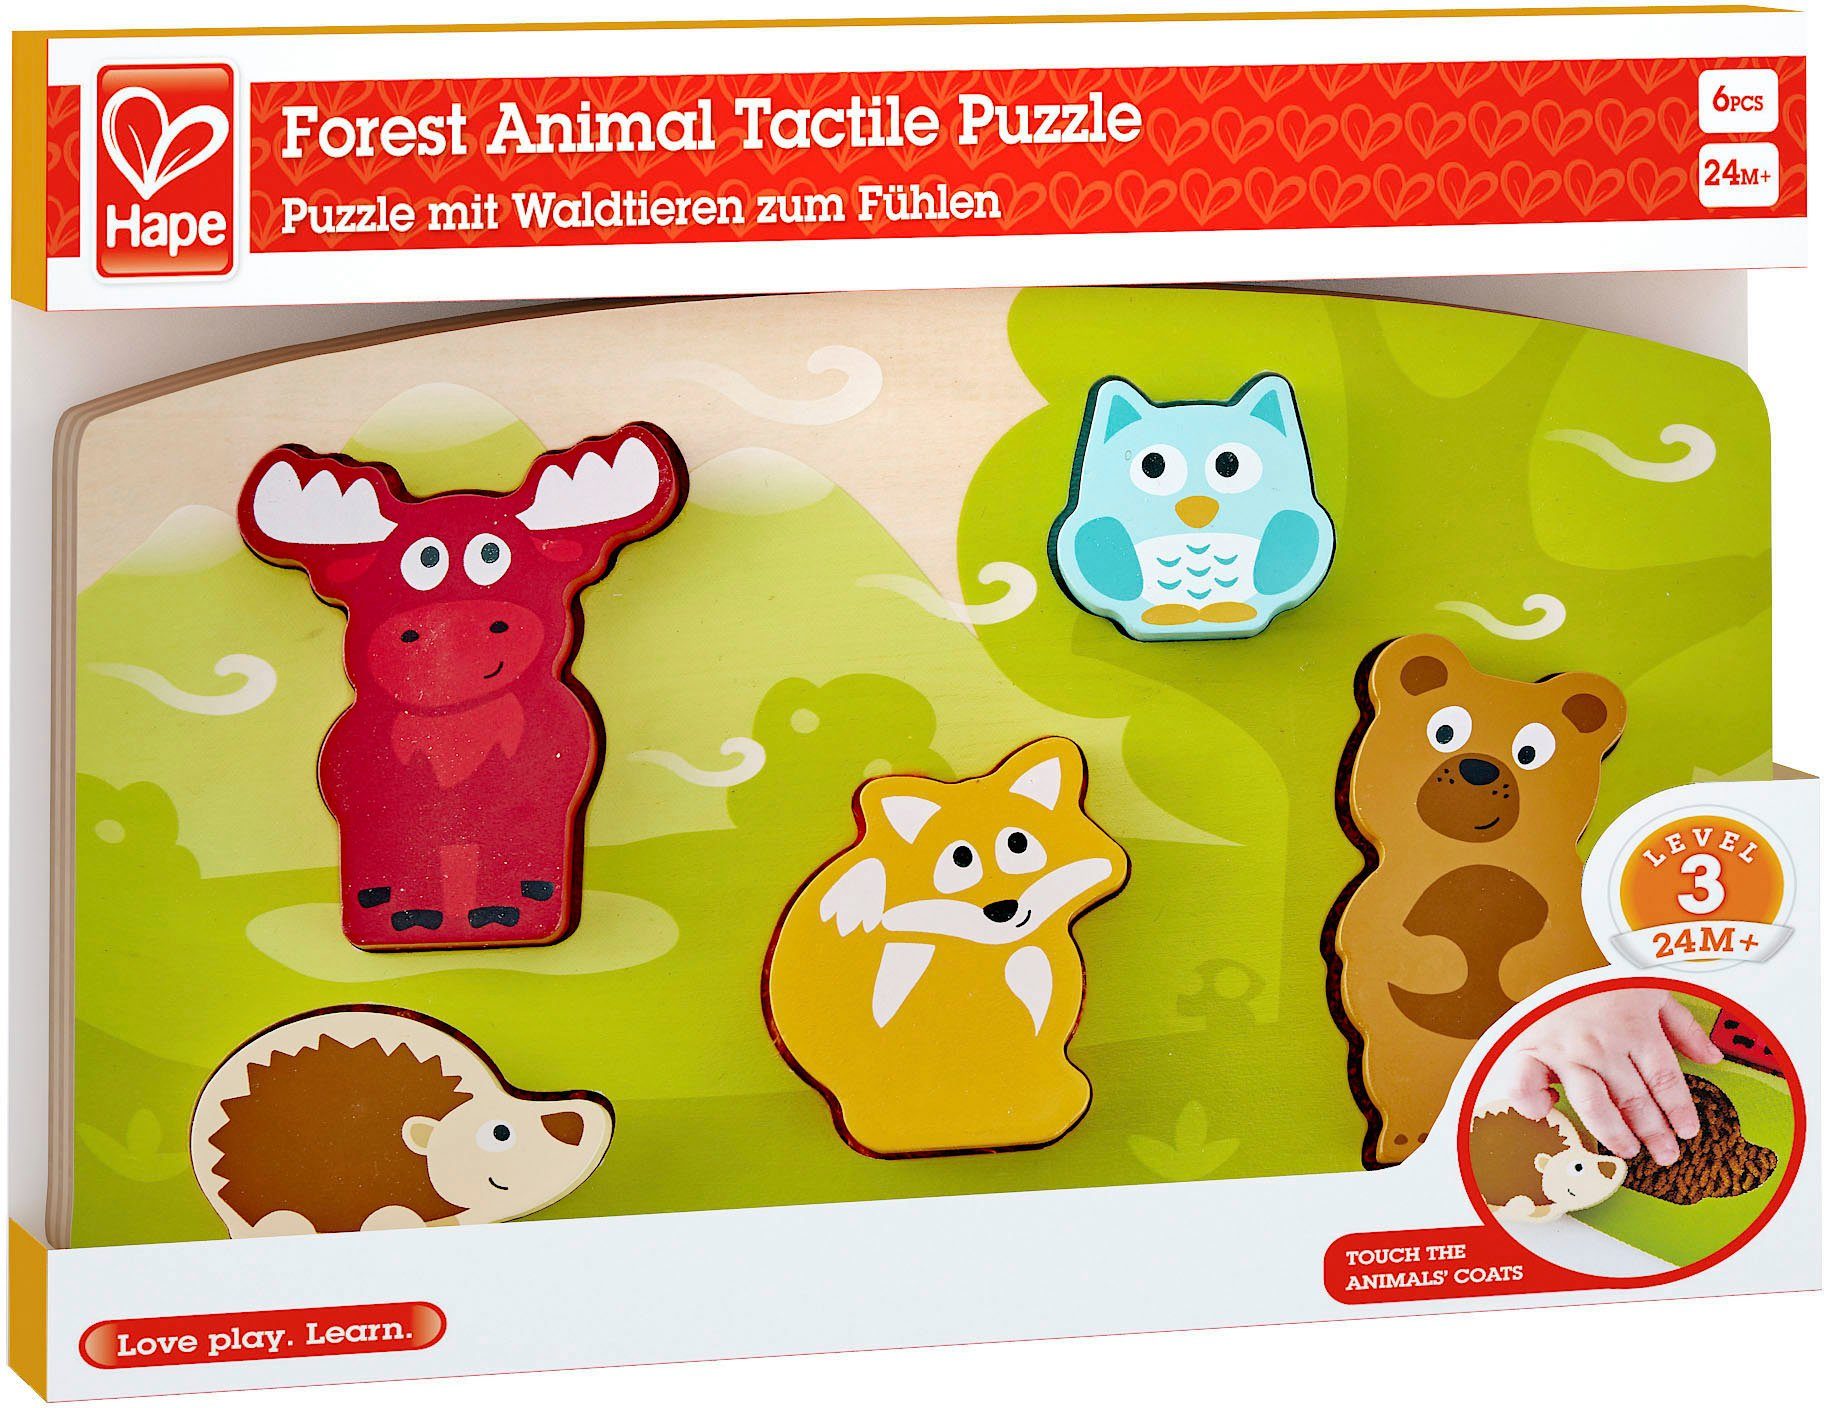 weltweit Hape Wald - Steckpuzzle FSC®- Fühlpuzzle, Waldtiere Puzzleteile, 5 schützt